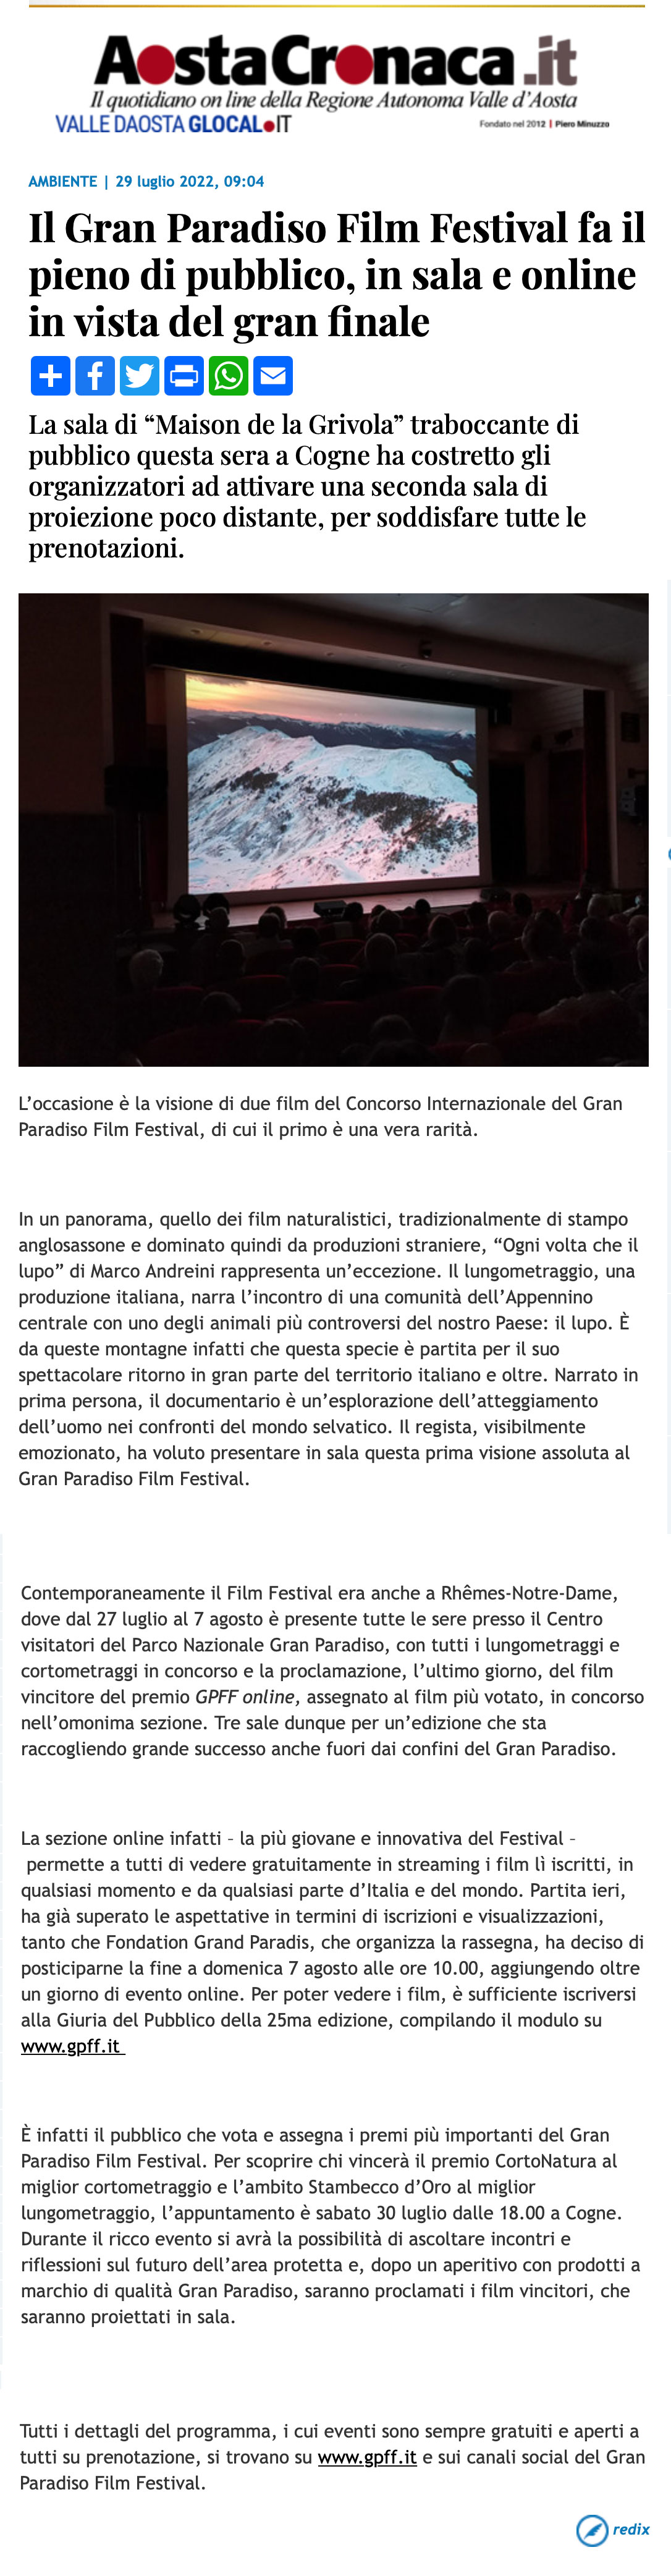 2022-07-29_AostaCronaca_Il-Gran-Paradiso-Film-Festival-fa-il-pieno-di-pubblico-in-sala-e-online-in-vista-del-gran-finale